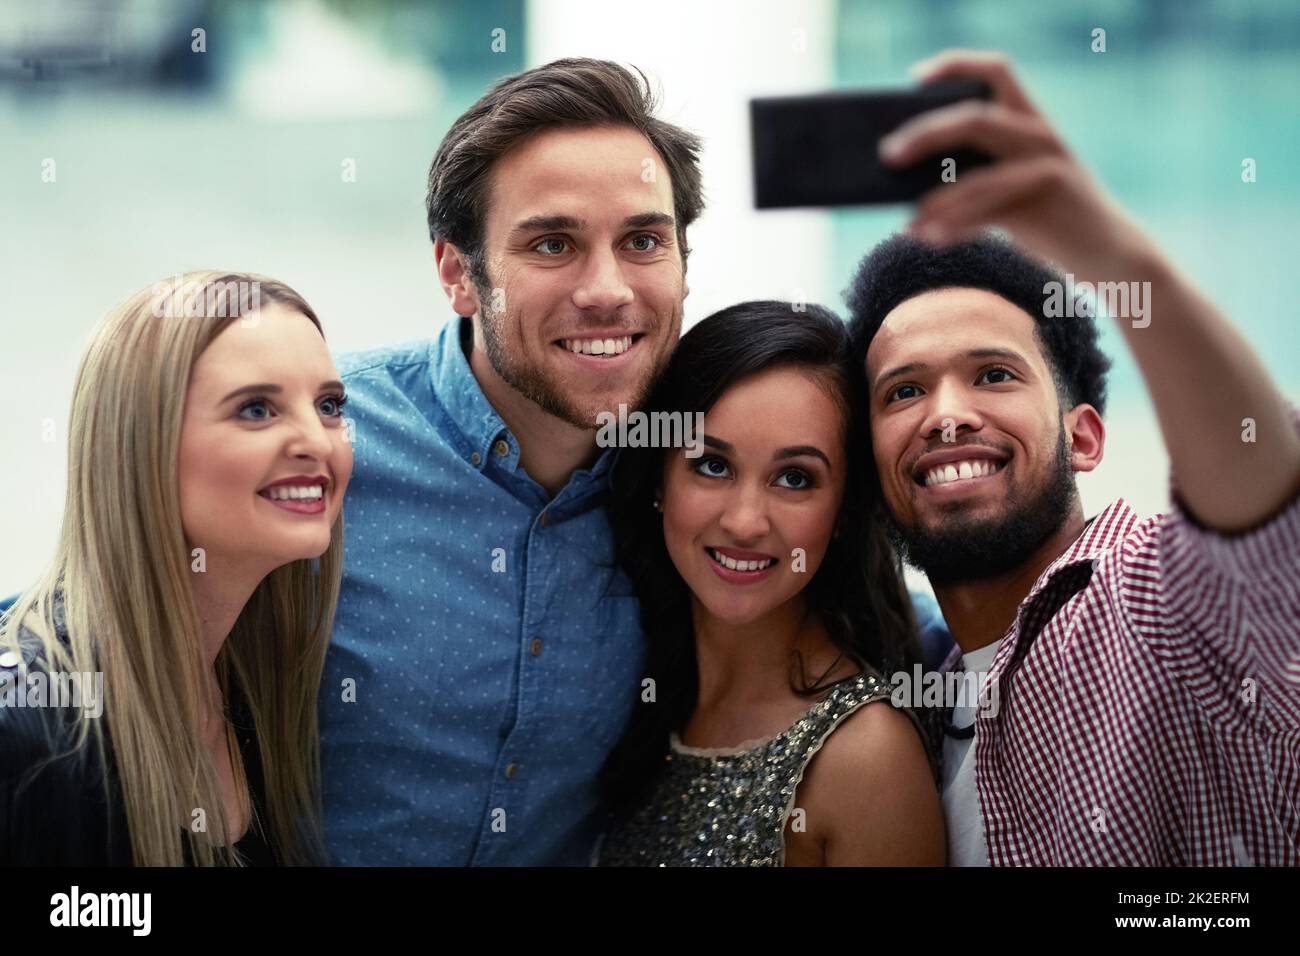 Diese geht direkt auf Social Media. Aufnahme einer glücklichen Gruppe von Freunden, die ein Selfie mit einem Smartphone in einem Nachtclub macht. Stockfoto